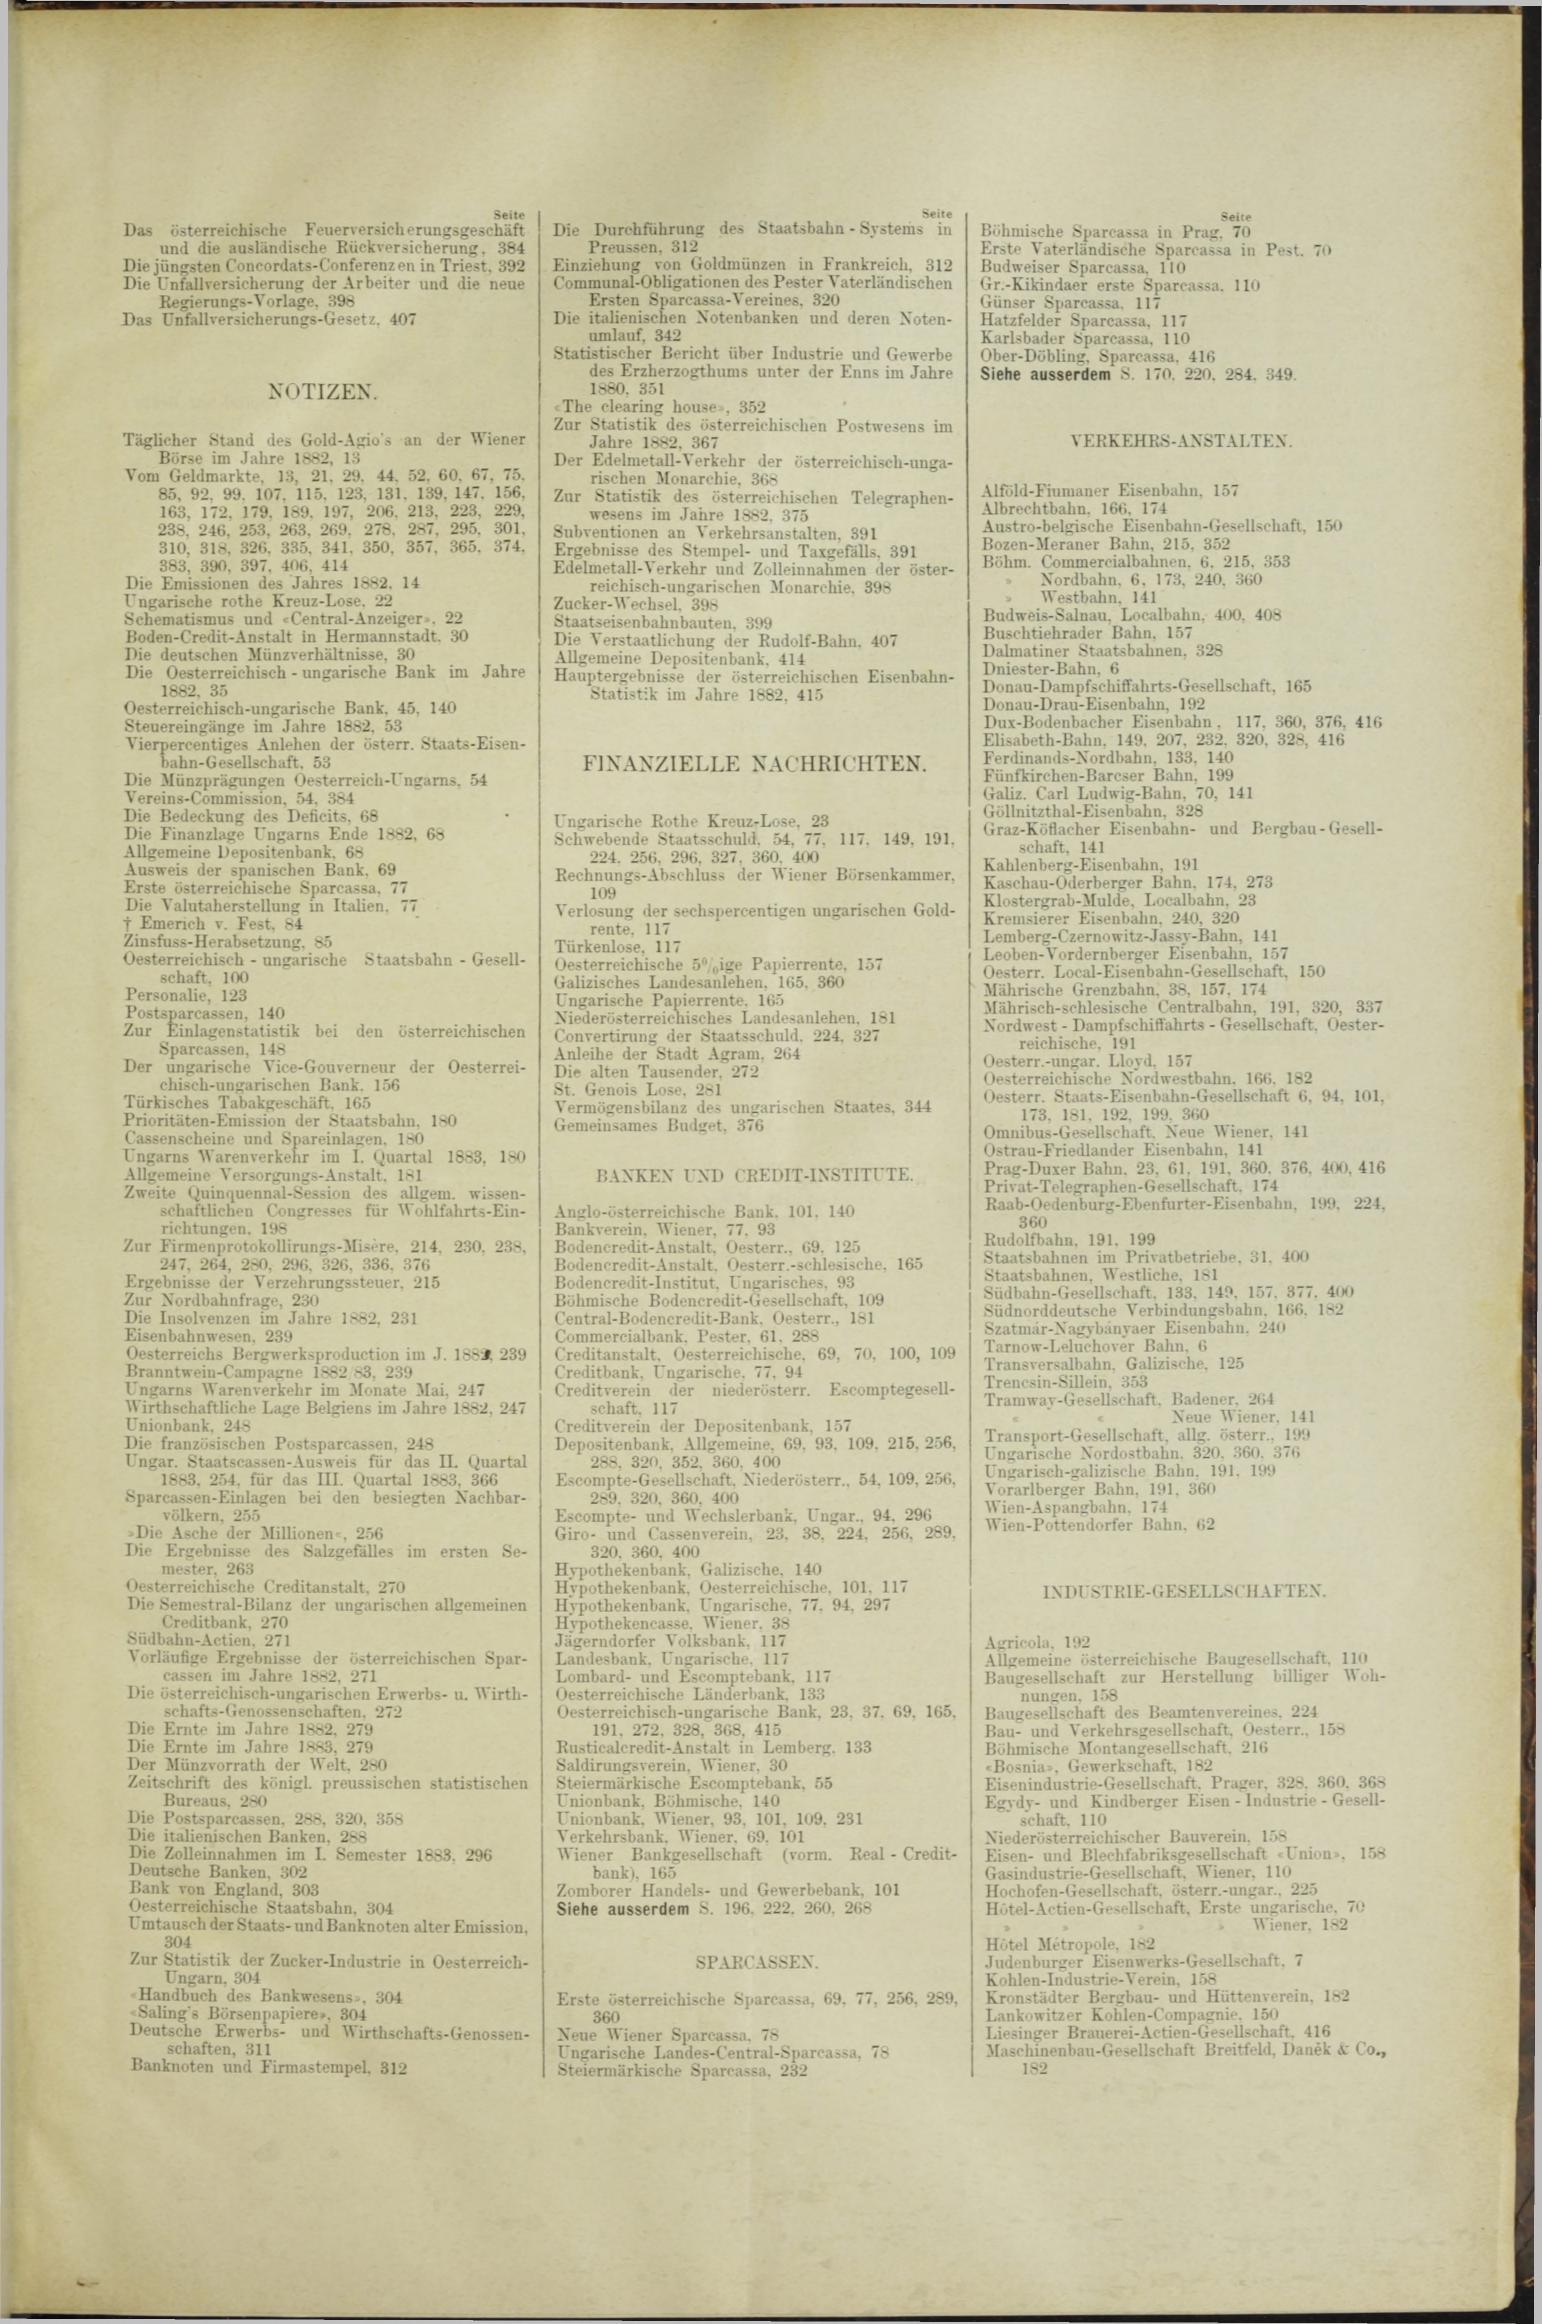 Der Tresor 09.08.1883 - Seite 11